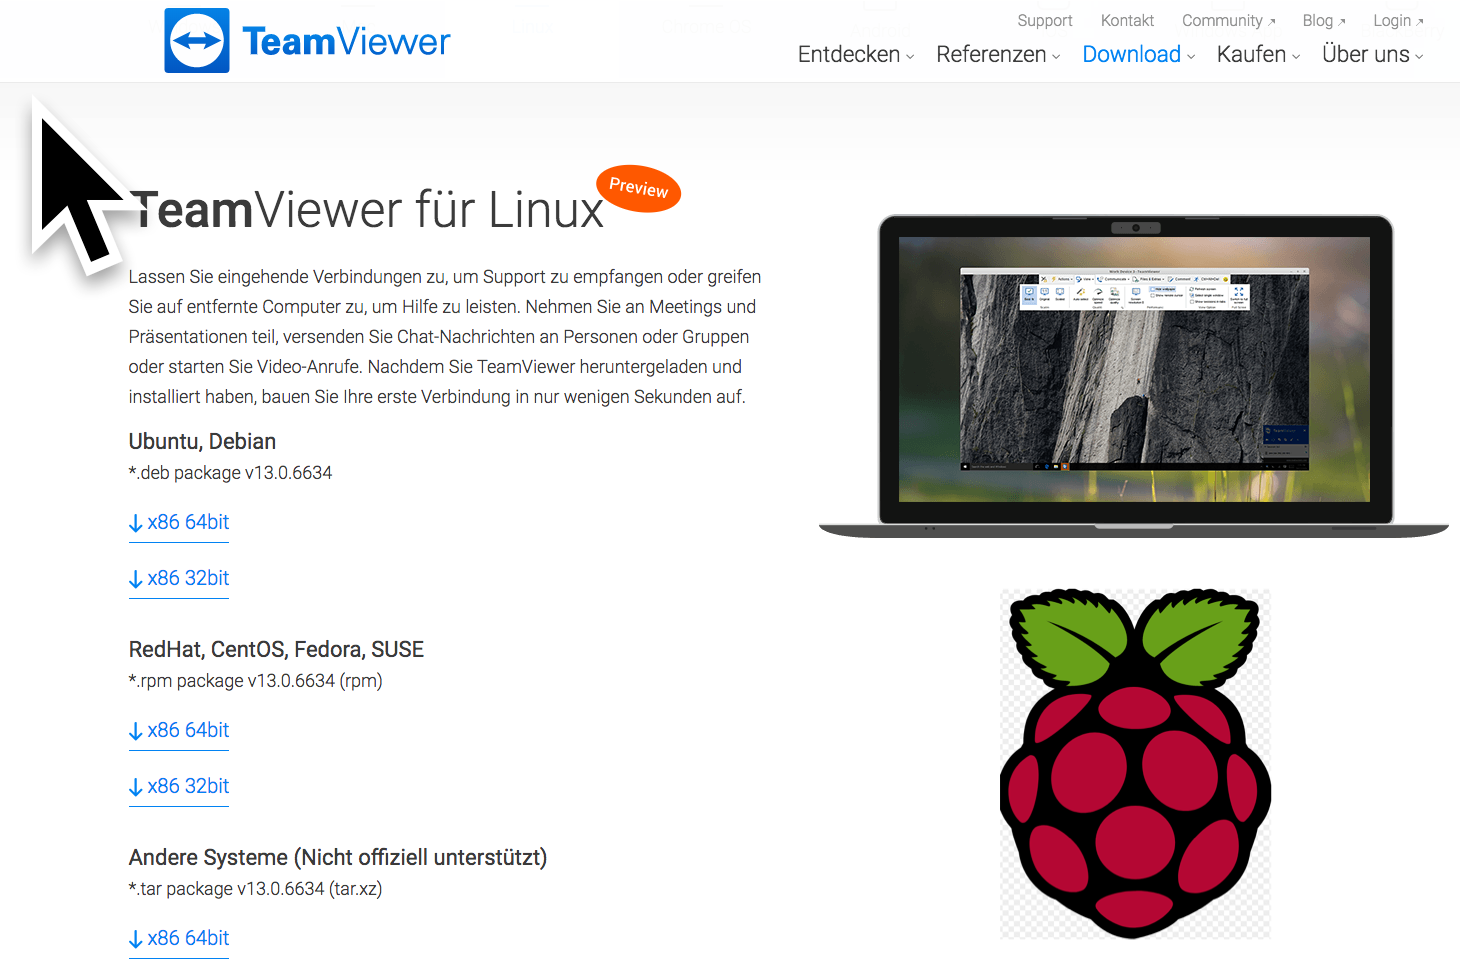 Der TeamViewer ist nun für jedes Betriebssystem kostenlos einzusetzen - Voraussetzung ist der rein private Gebrauch! Das ist eine wirklich tolle News! Selbst für den Raspberry Pi gibt es eine Version.